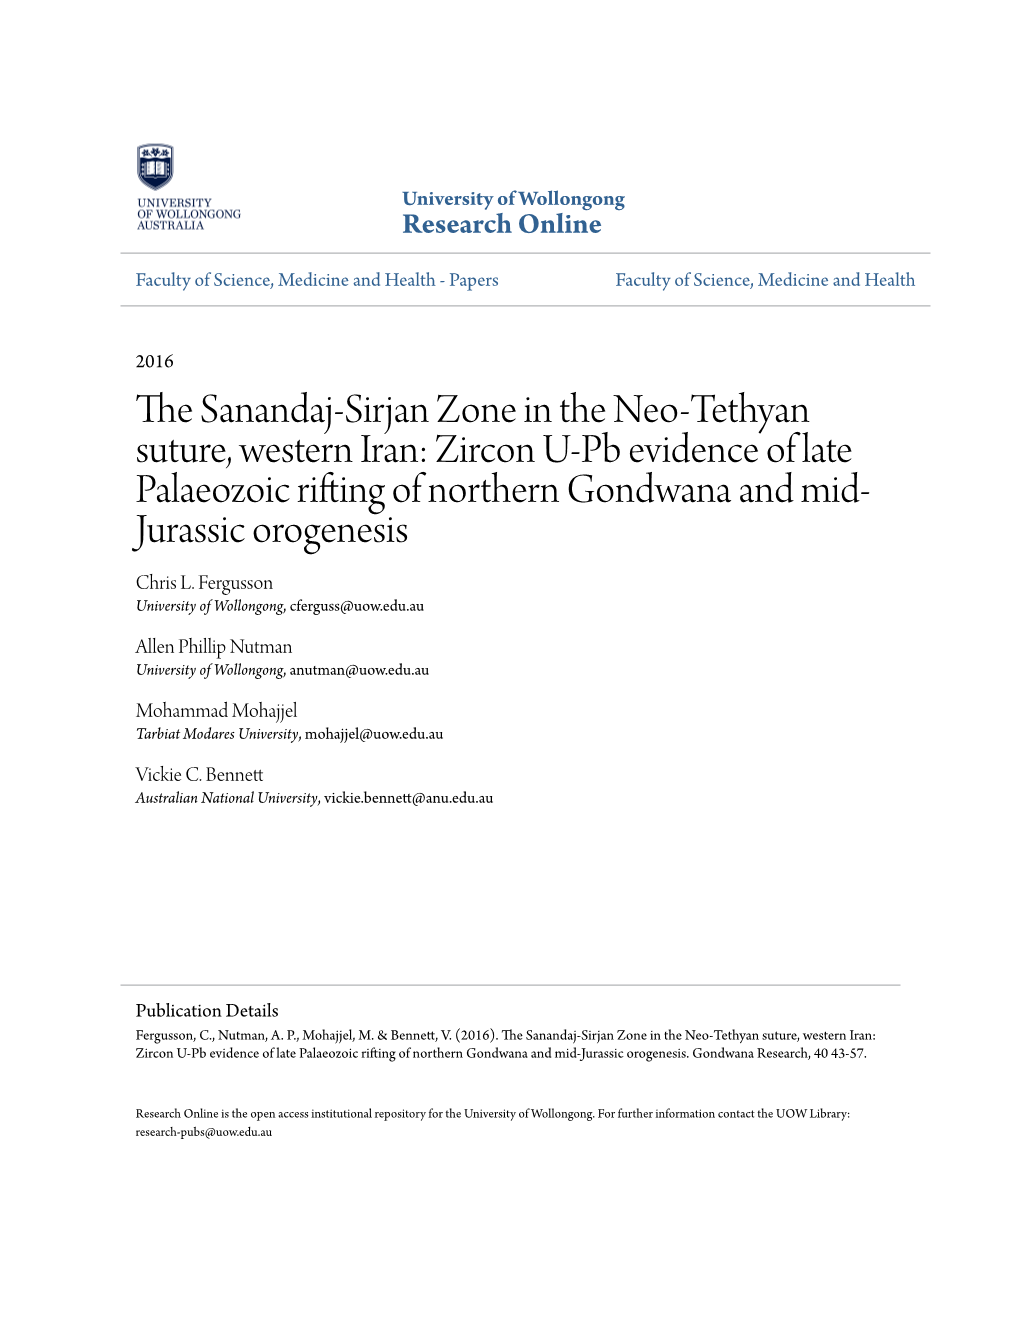 The Sanandaj-Sirjan Zone in the Neo-Tethyan